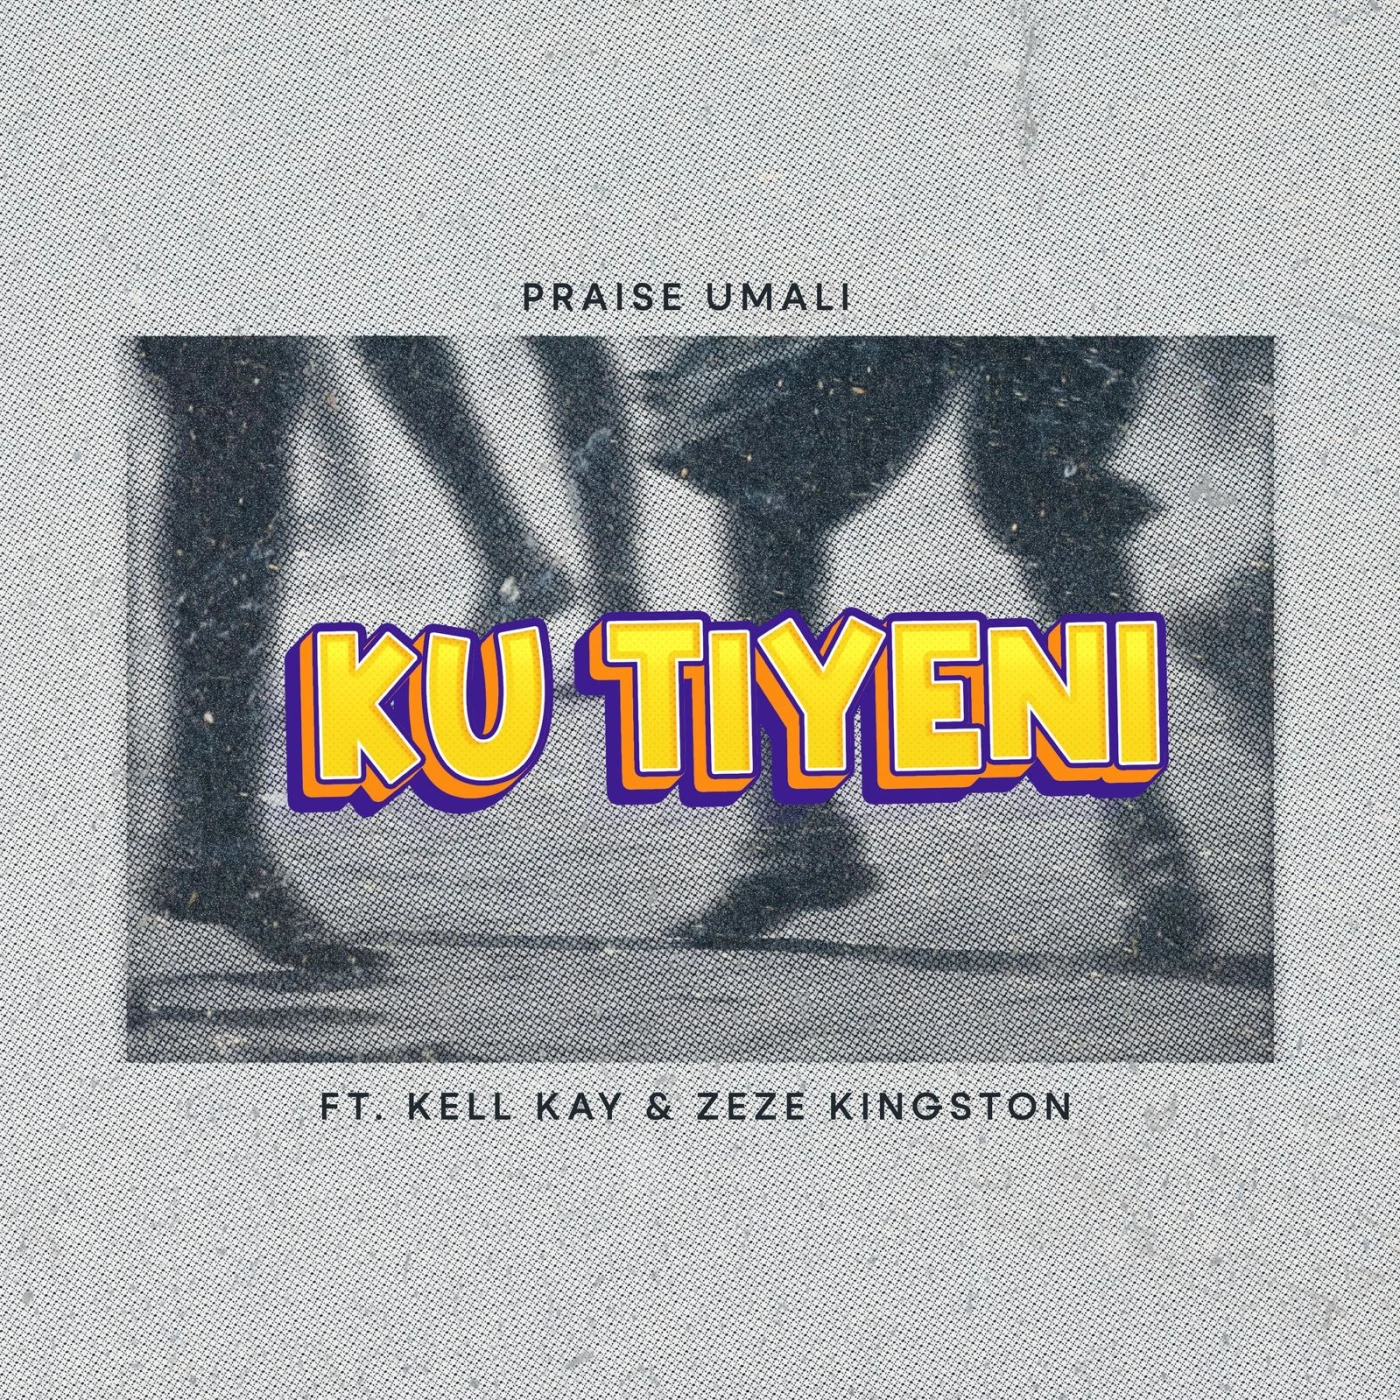 ku-tiyeni-ft-kell-kay--zeze-kingston-praise-umali